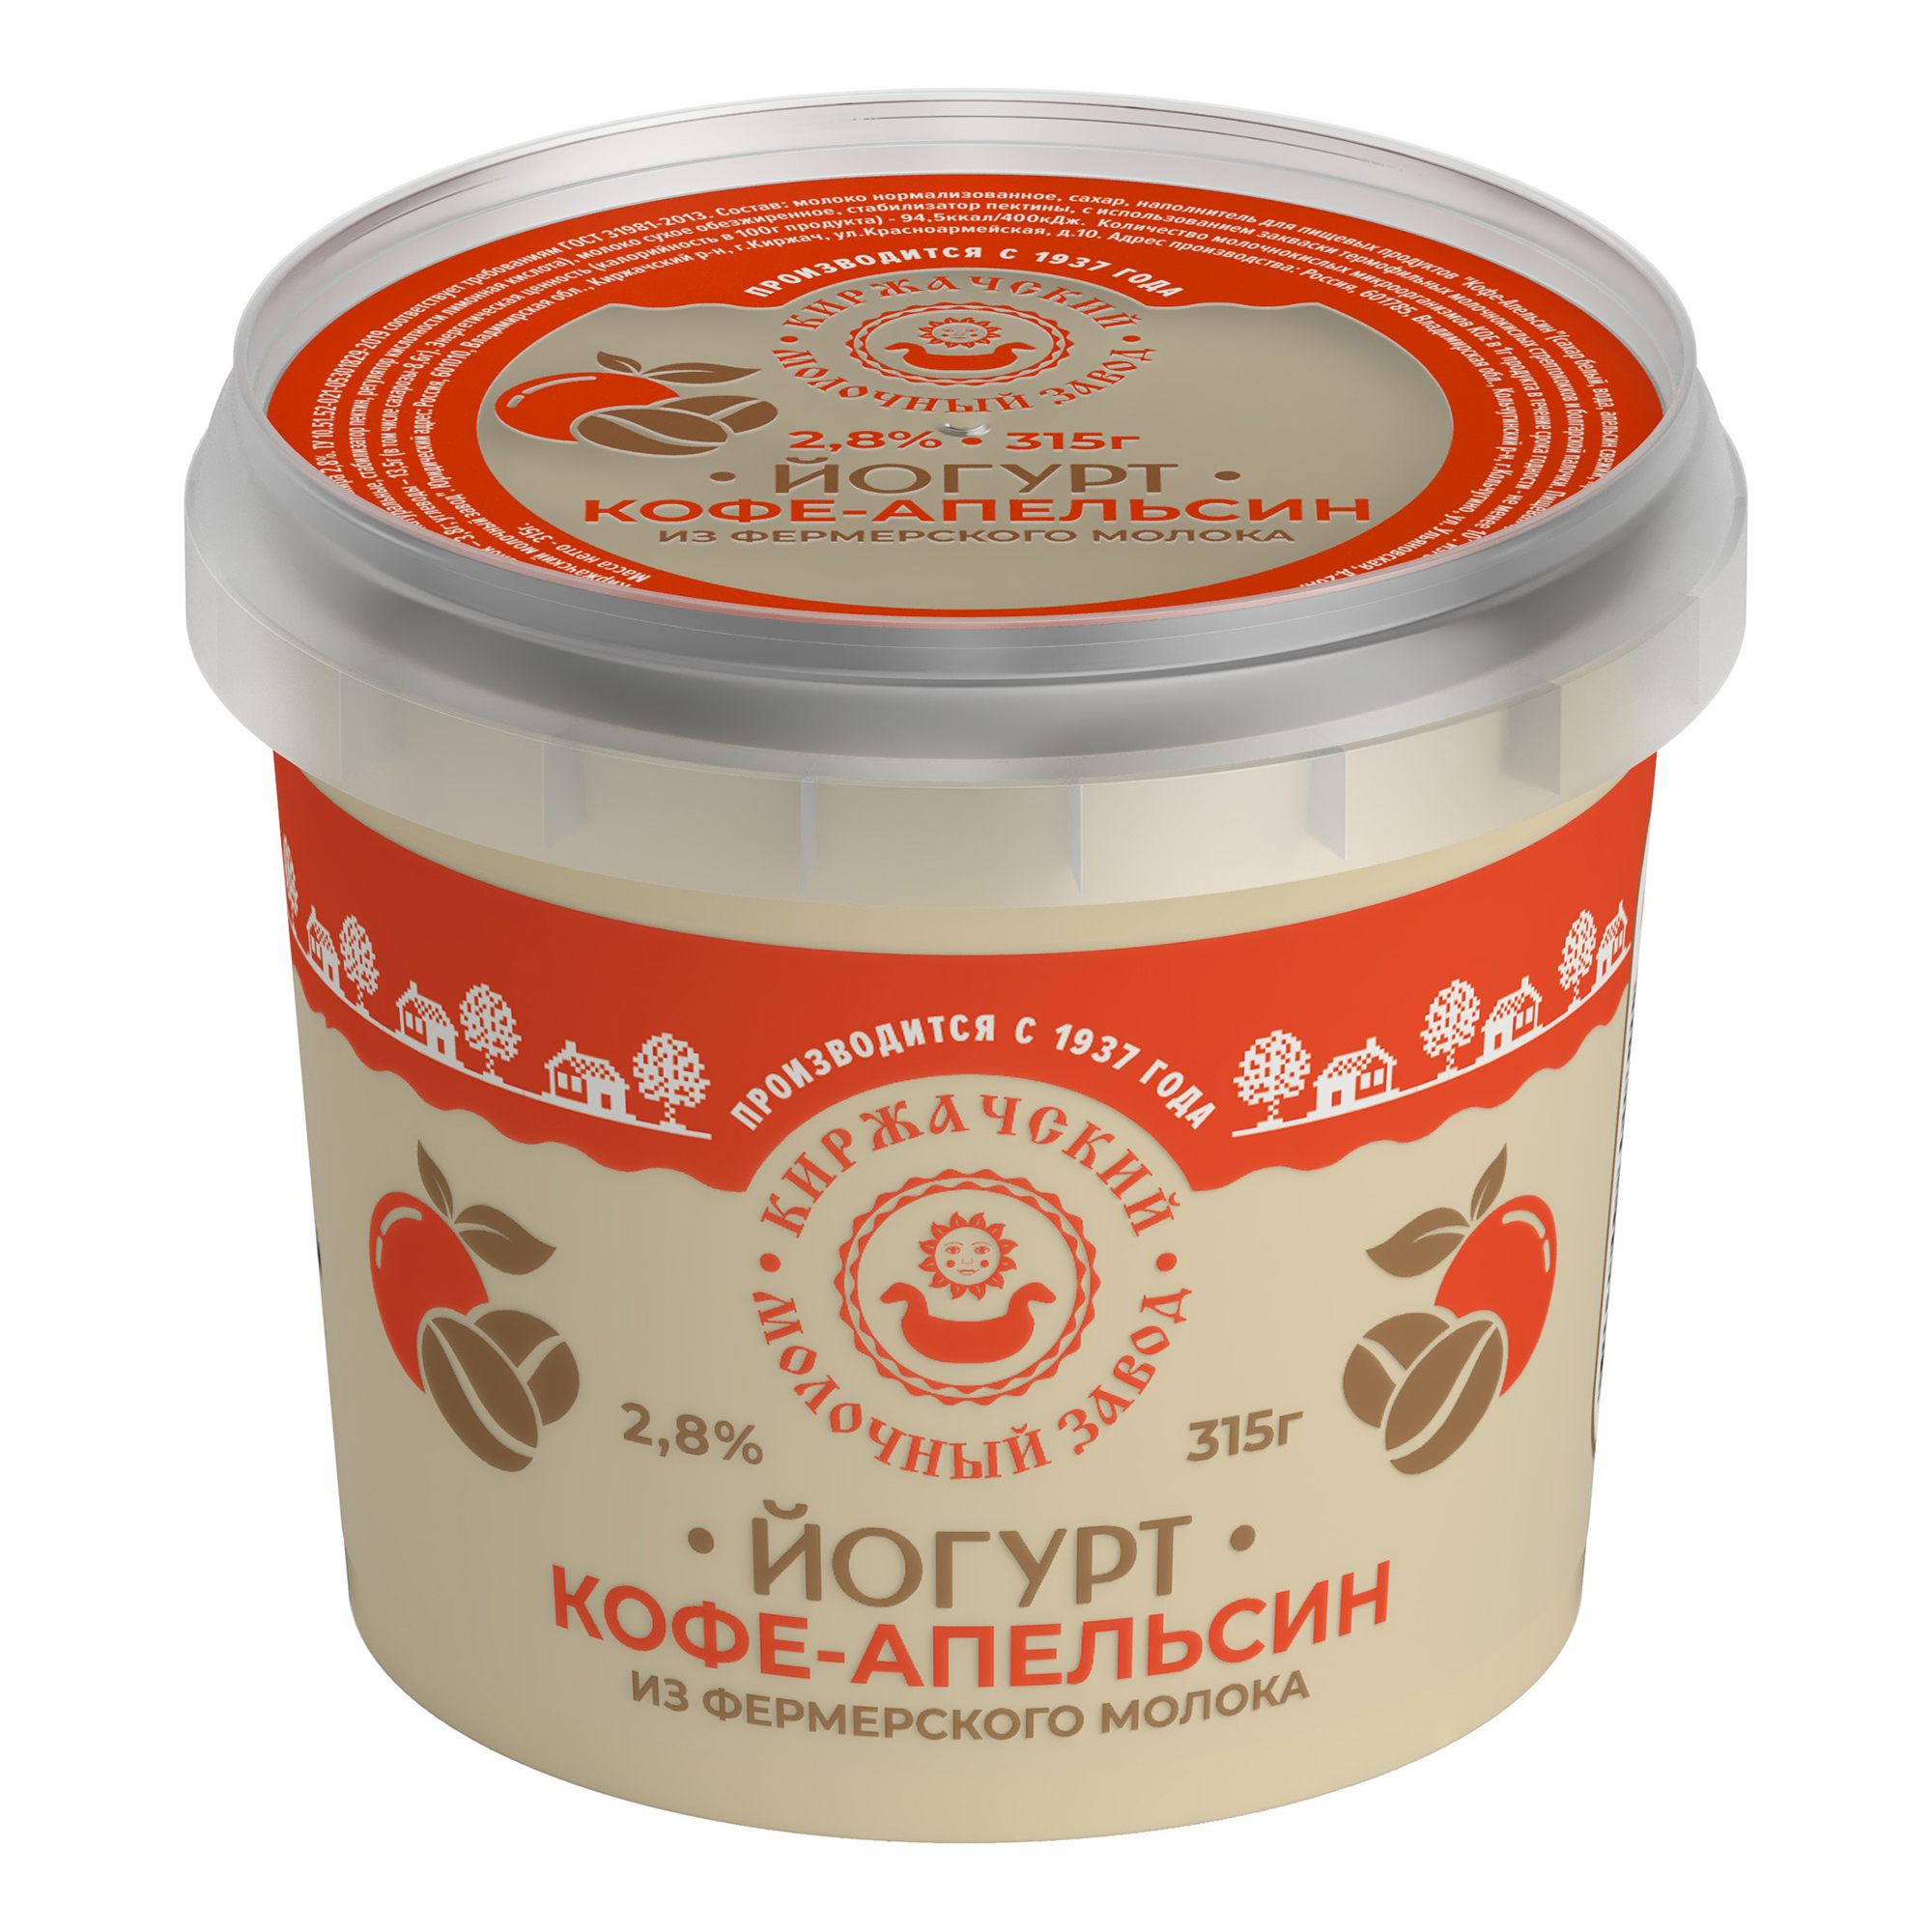 Йогурт Киржачский Молочный Завод кофе-апельсин 2,8% БЗМЖ 315 г